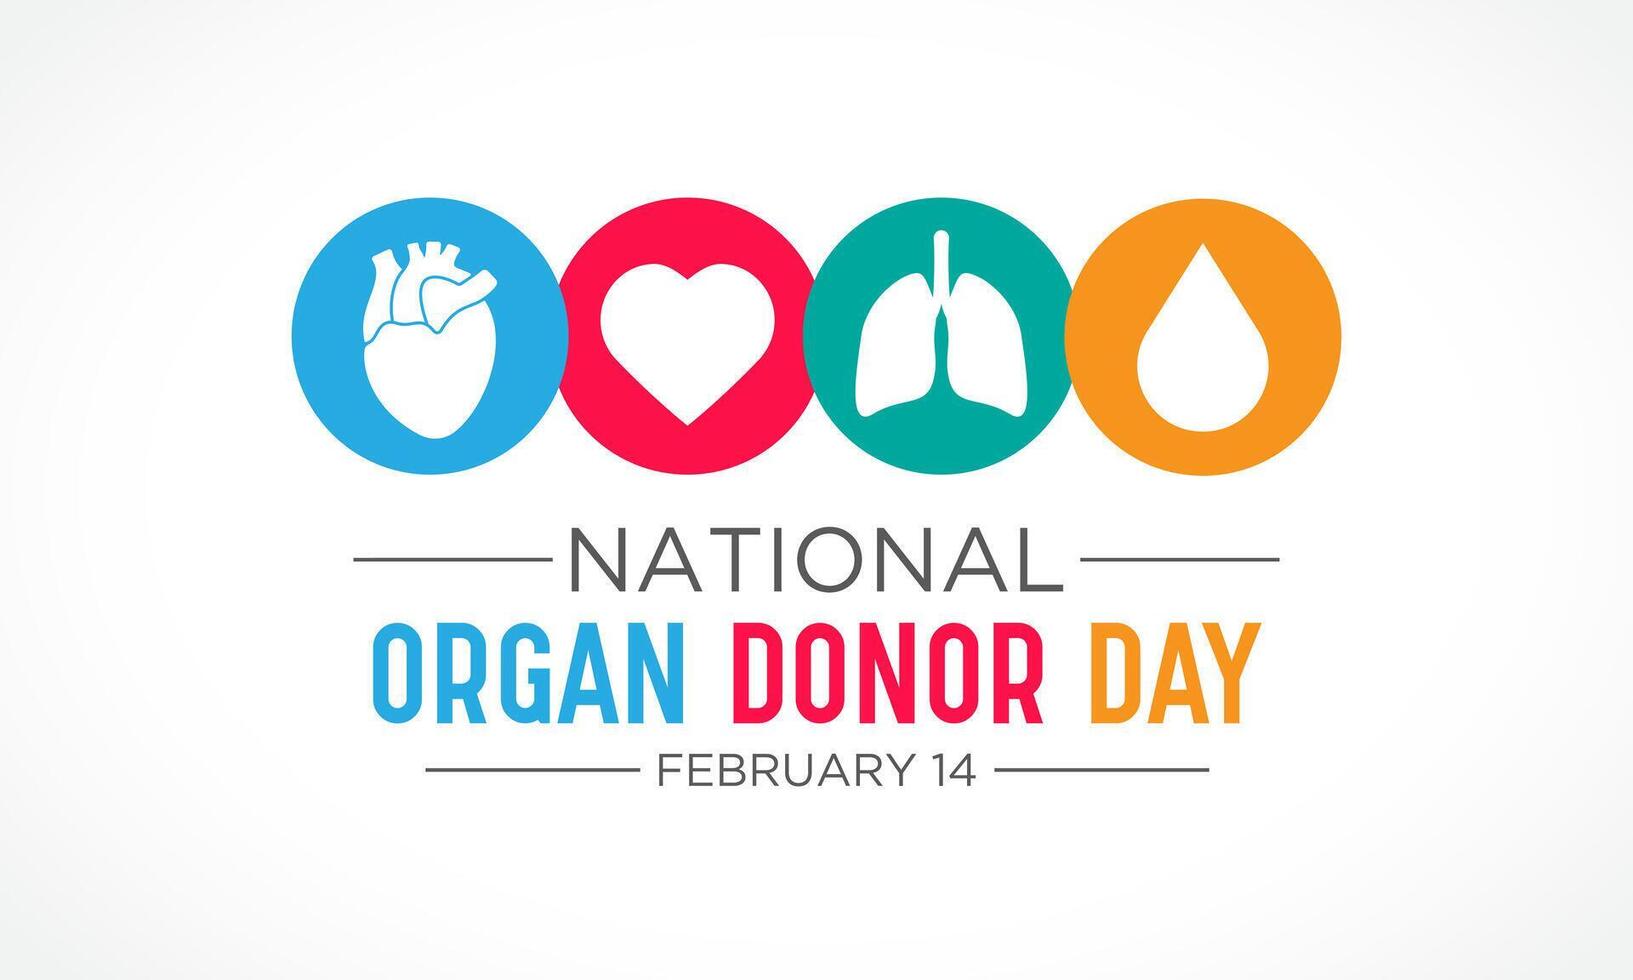 nacional Organo donante día es observado cada año en febrero 14 nacional donante día. salud y médico conciencia vector modelo para bandera, tarjeta, póster y antecedentes diseño. vector ilustración.